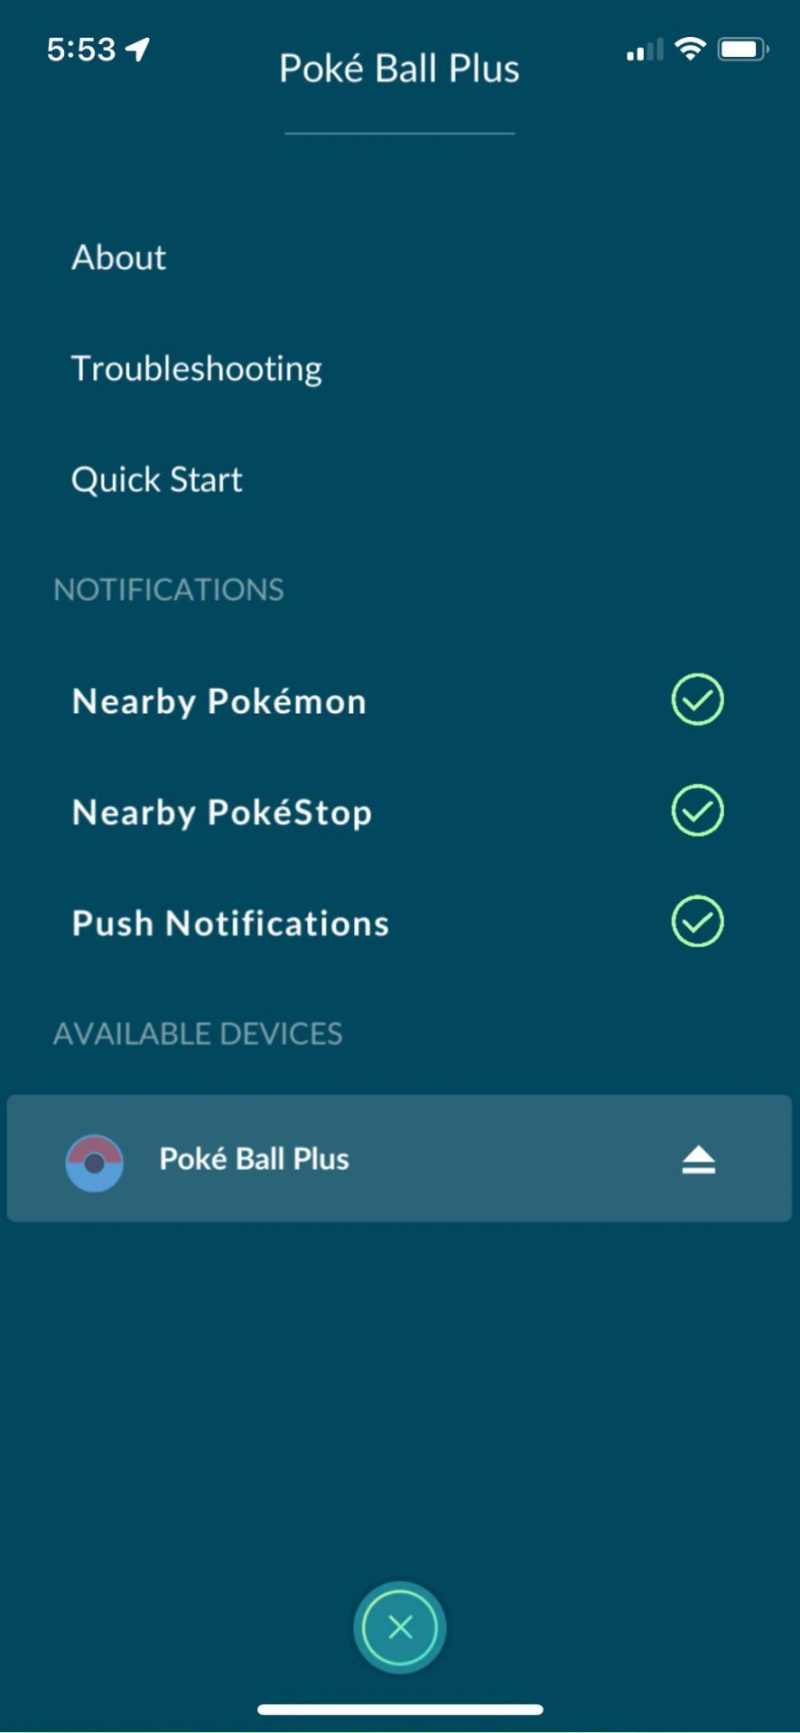   Conectați Poke Ball Plus la Pokémon Go, vedeți Meniu pentru a gestiona notificările